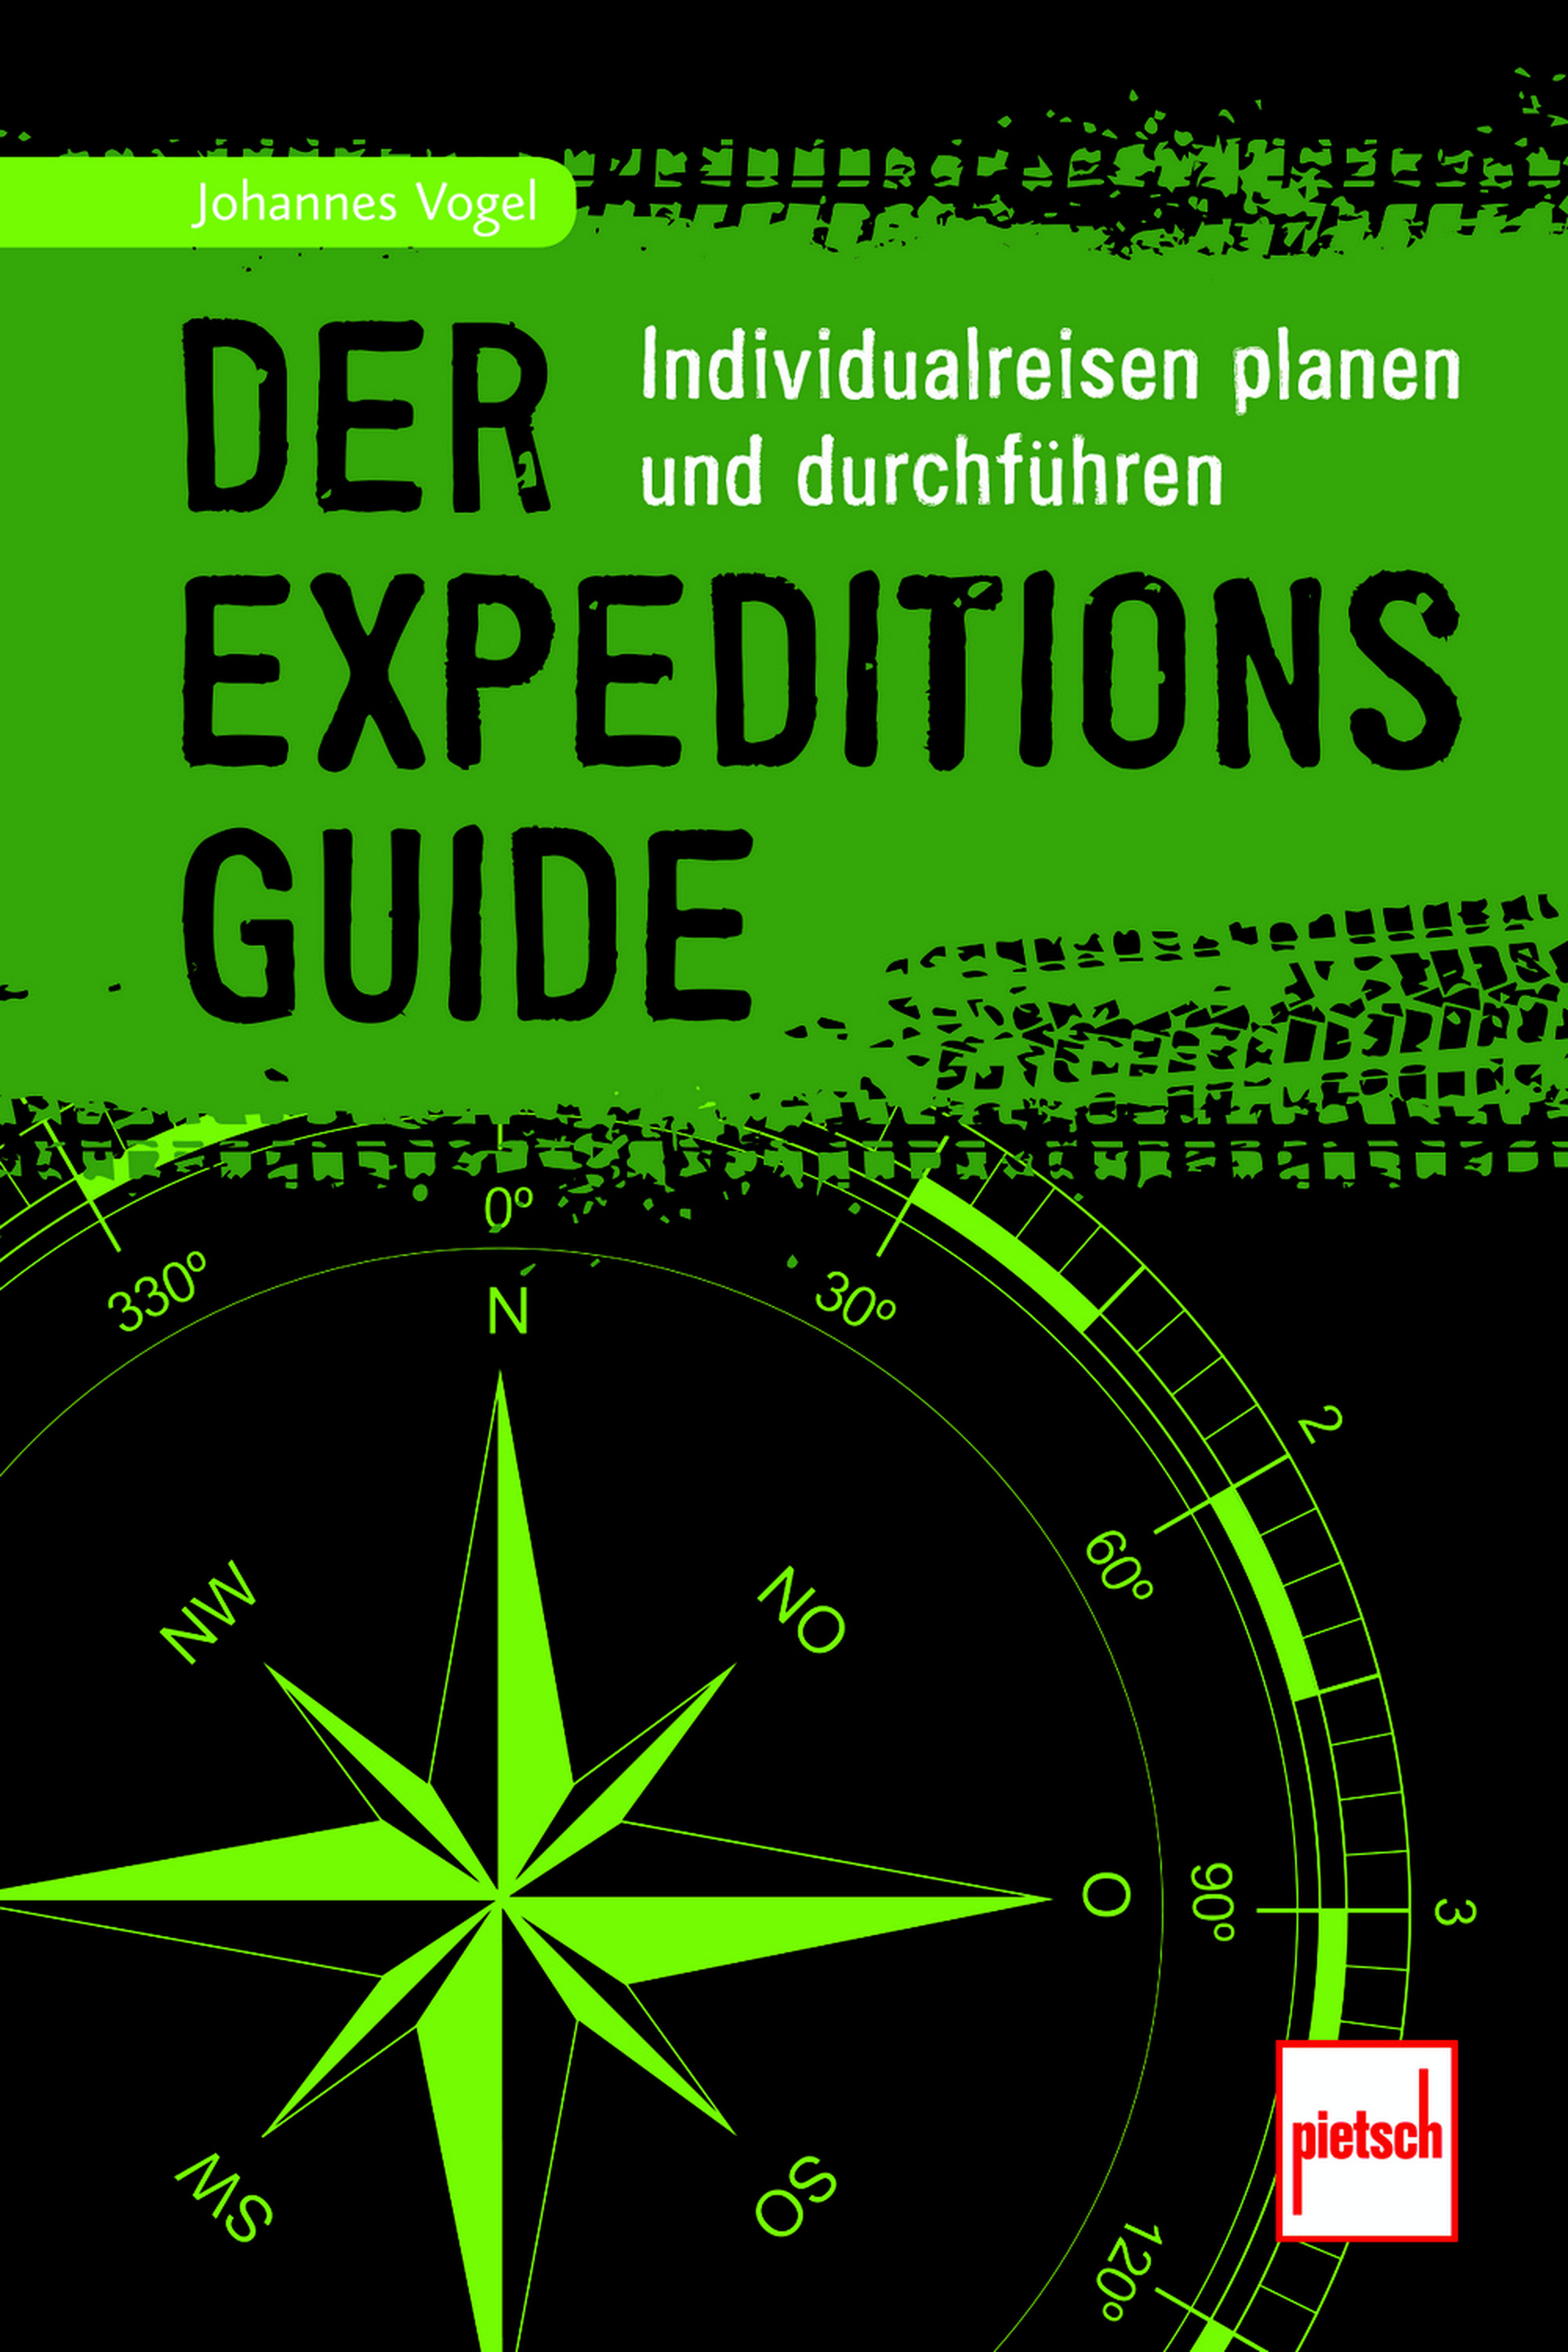 «Der Expeditionsguide. Individualreisen planen und durchführen»